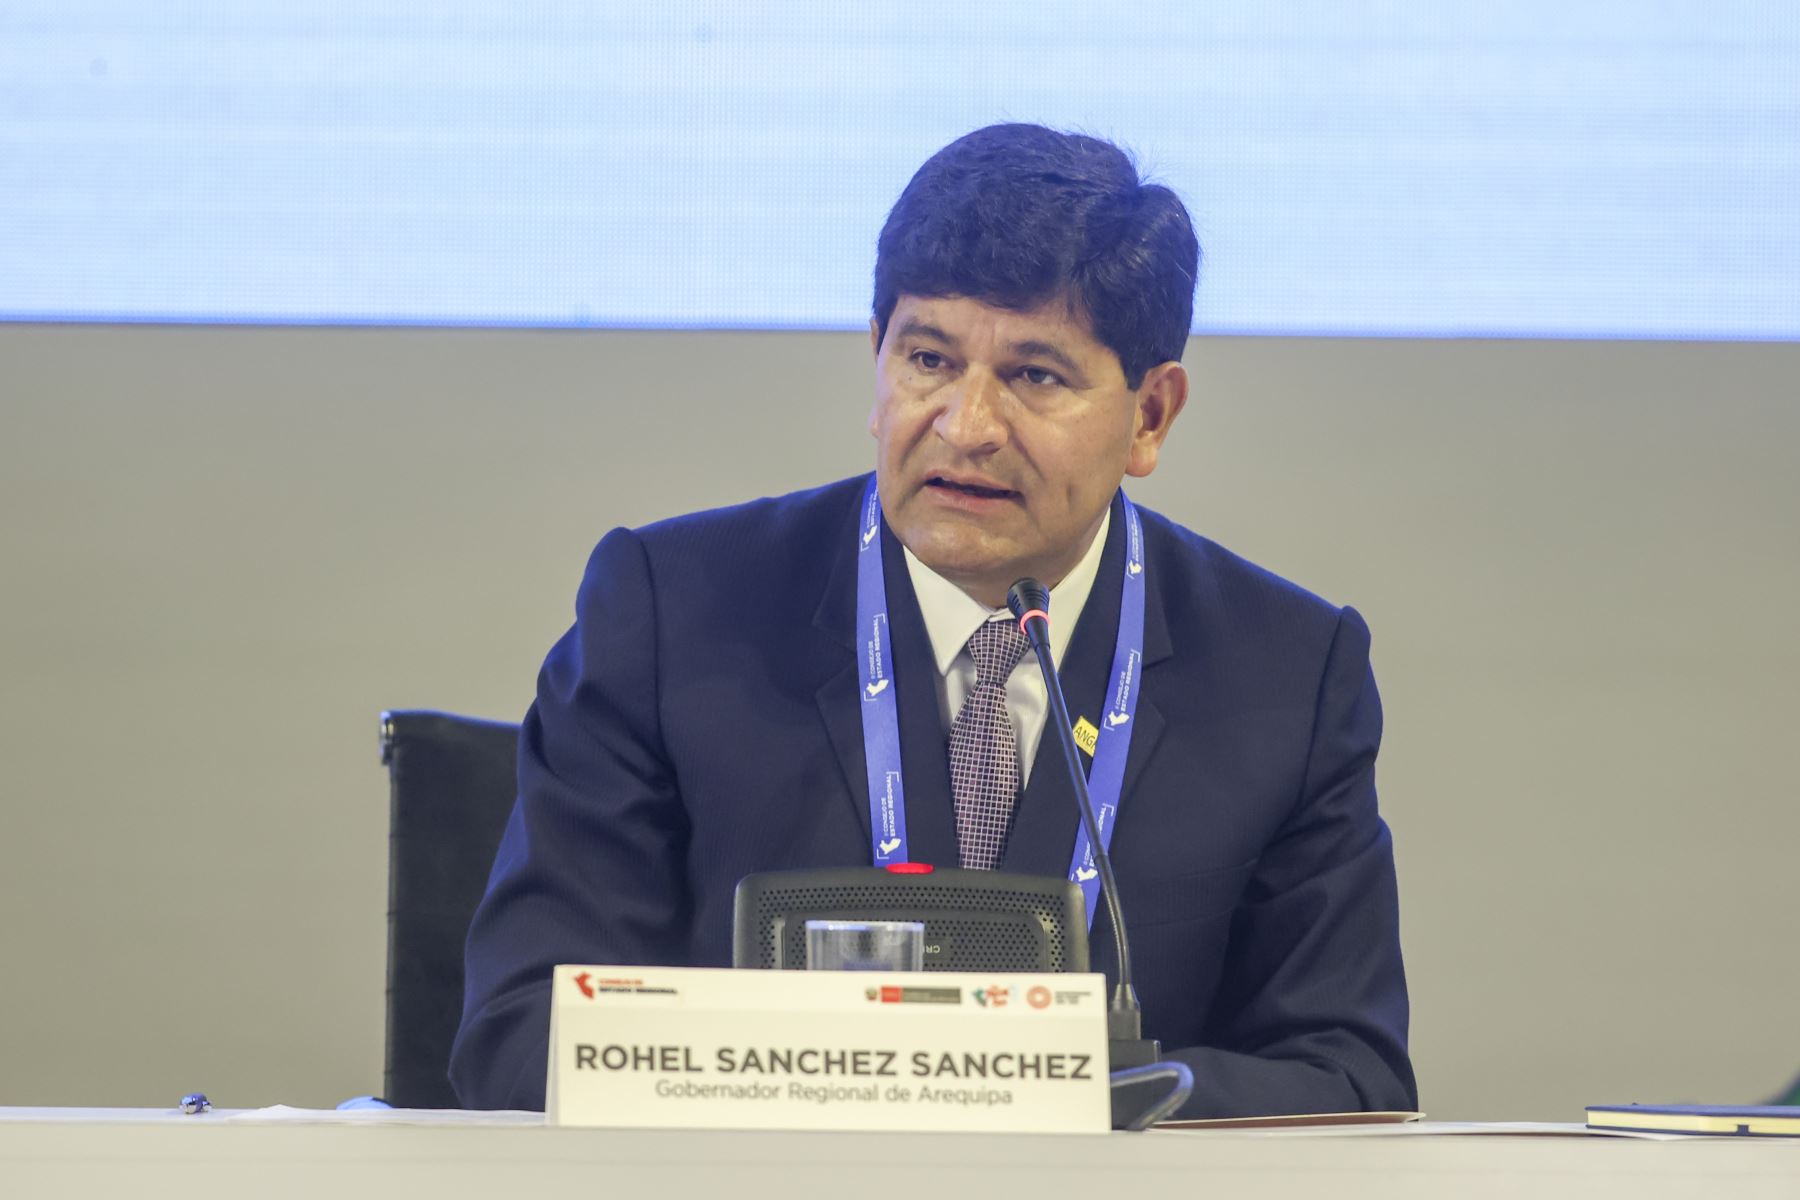 El gobernador regional de Arequipa, Rohel Sánchez, anunció el inicio de trabajos de emergencia en el sector agrario para hacer frente al Fenómeno El Niño. ANDINA/Juan Carlos Guzmán